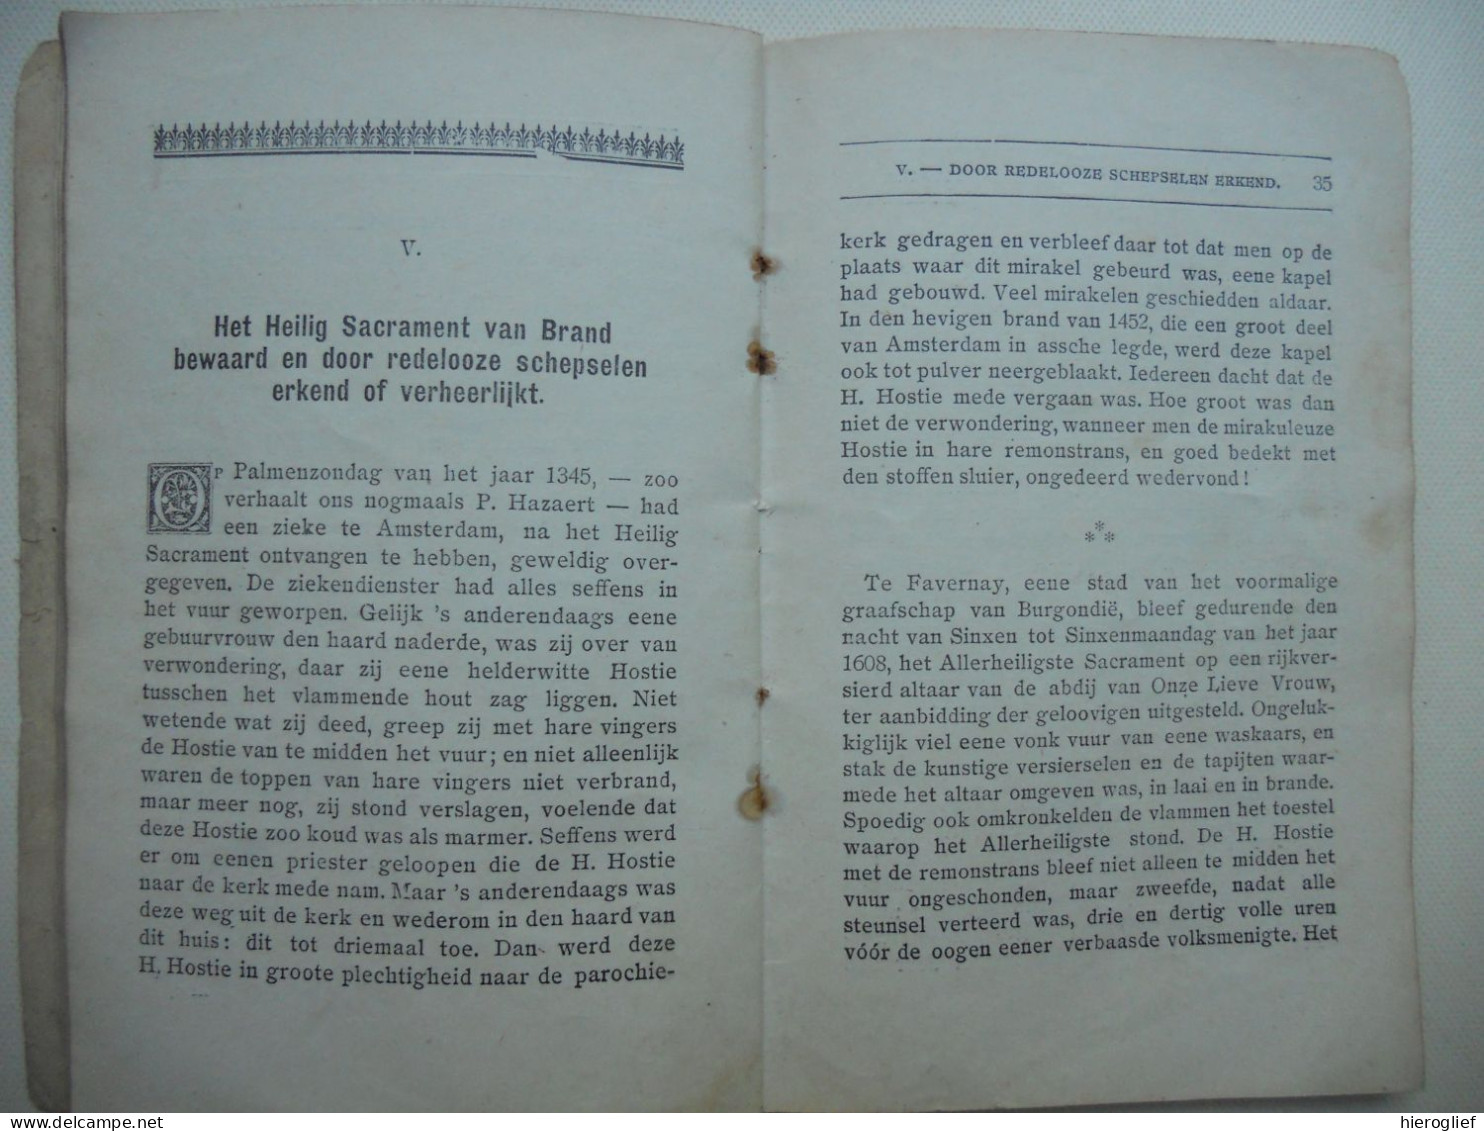 Het Allerheiligste SACRAMENT des ALTAARS - stichtende lezingen door J. Dewitte 1923 steenbrugge brugge de lusthof